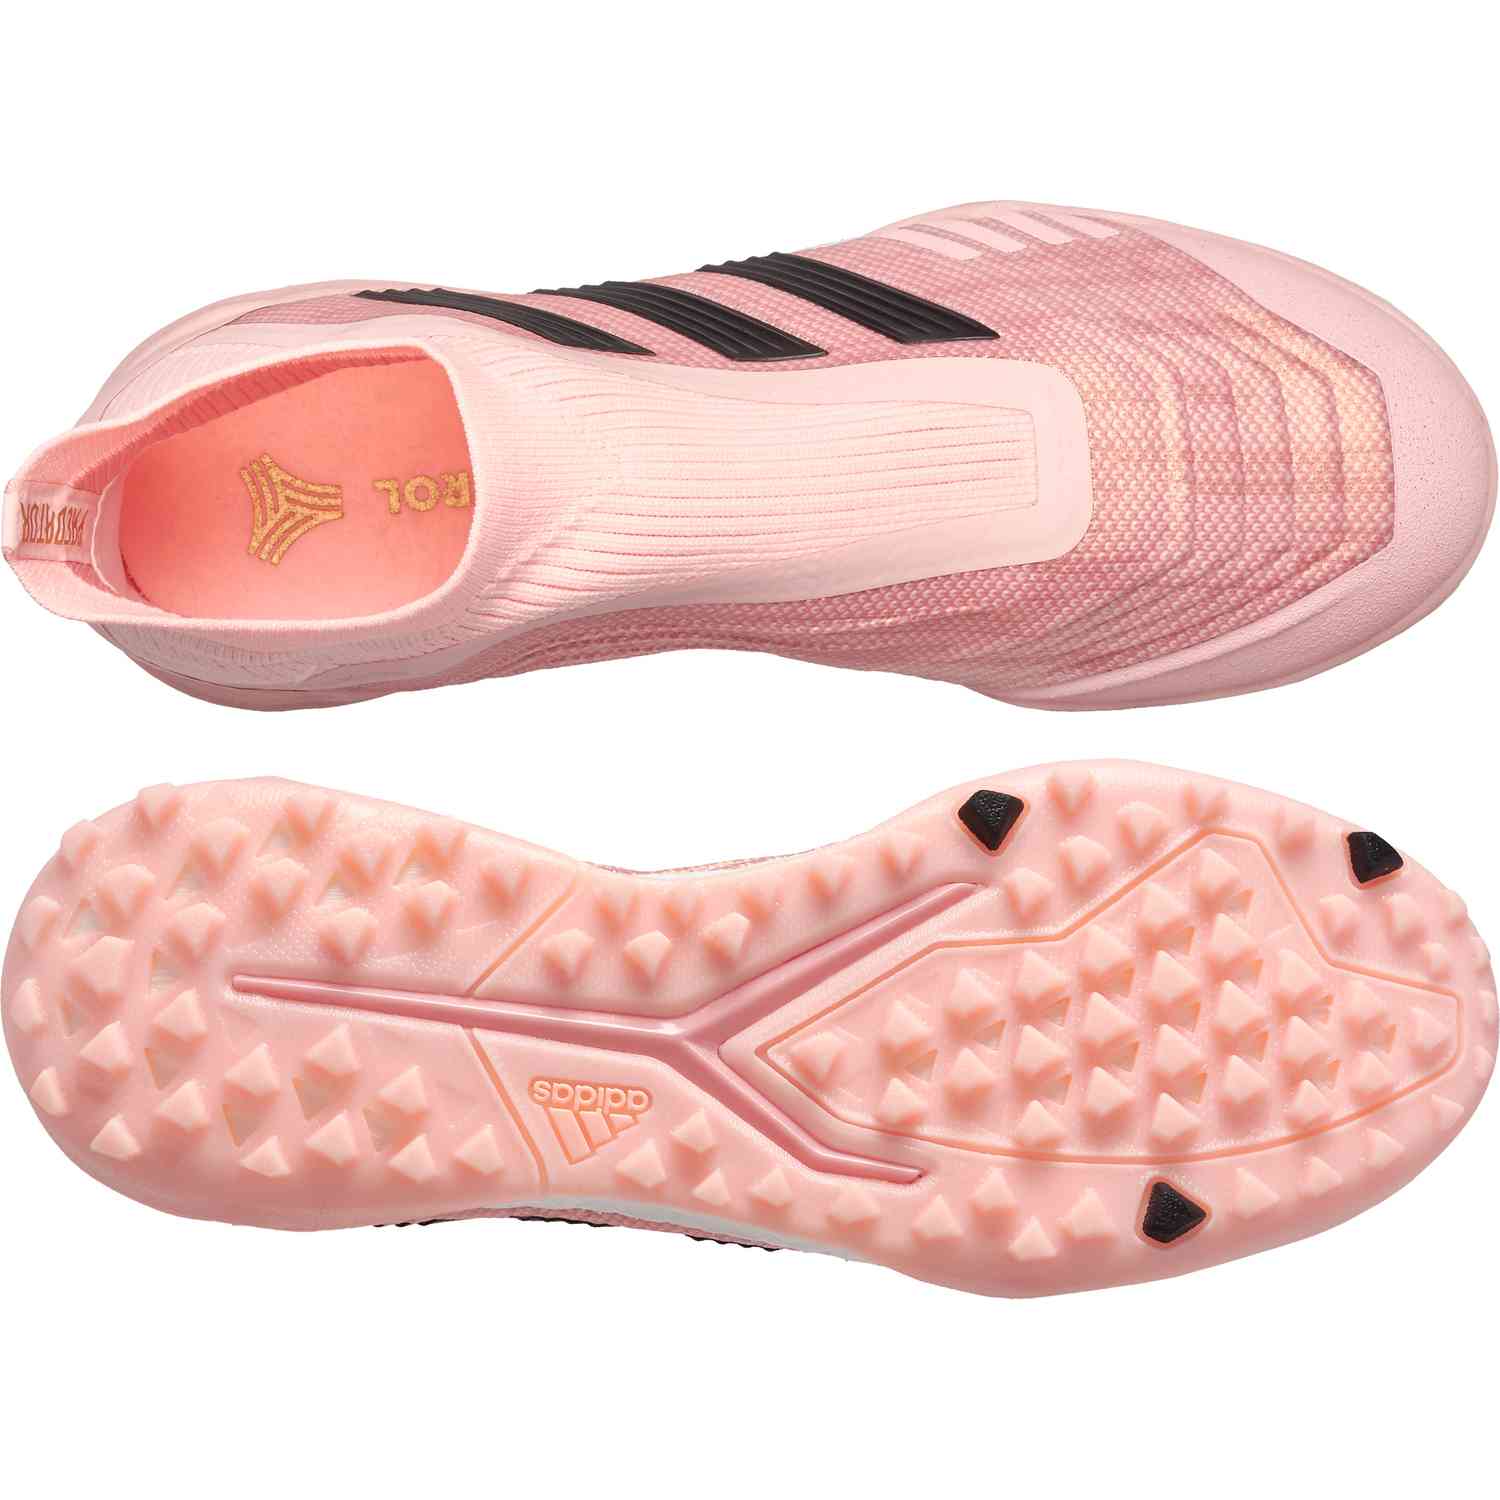 adidas predator pink turf